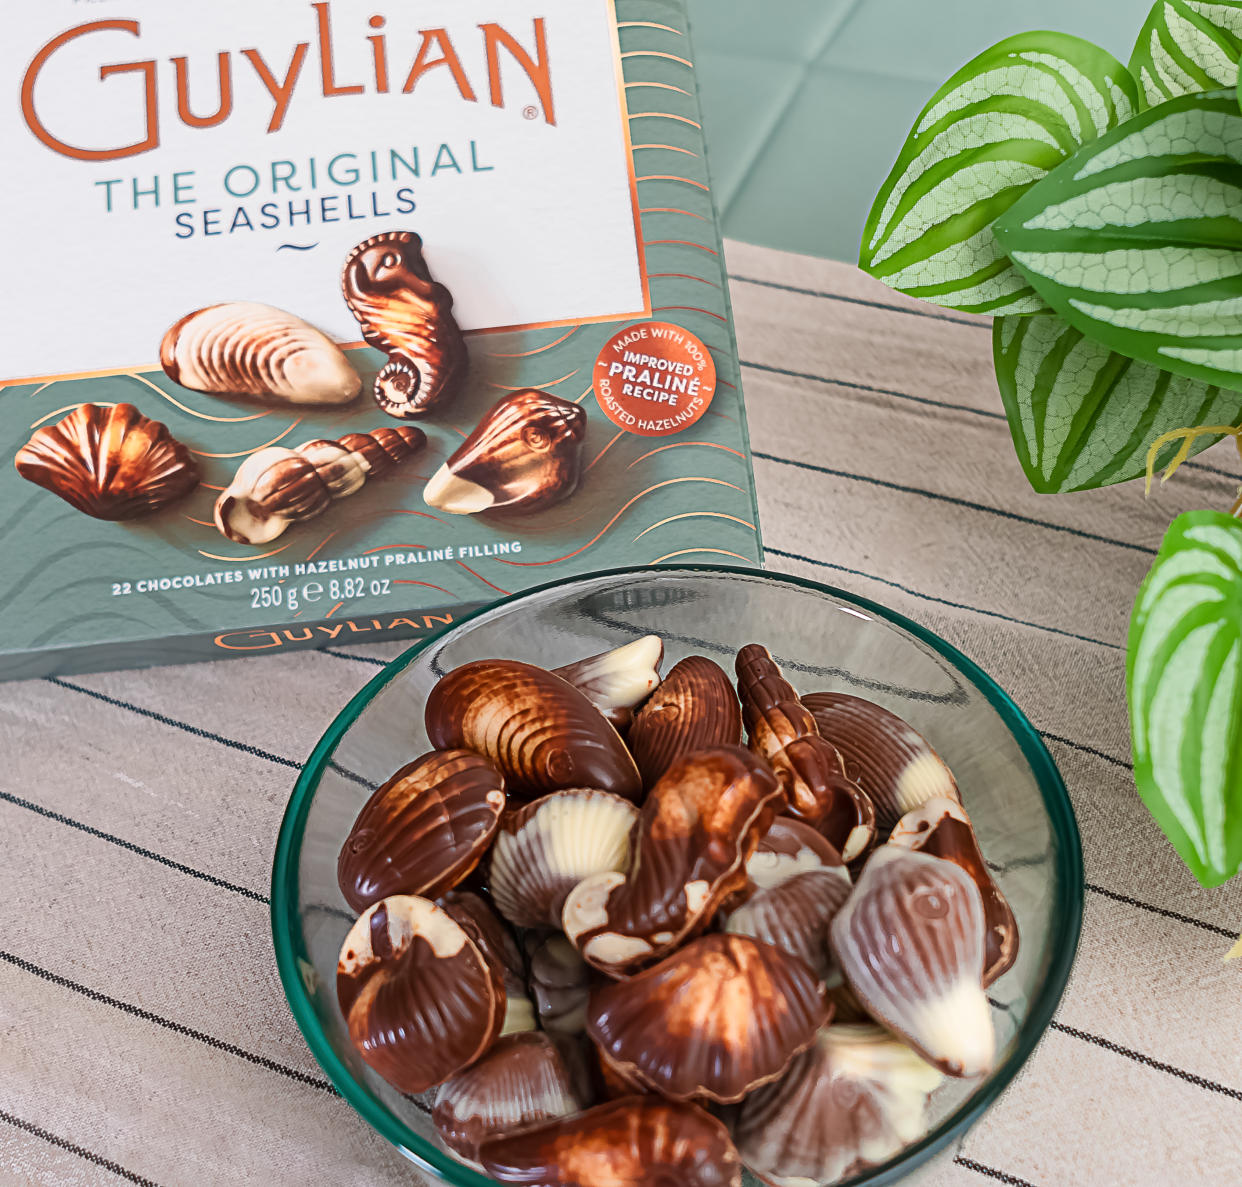 Guylian chocolates. (Guylian)